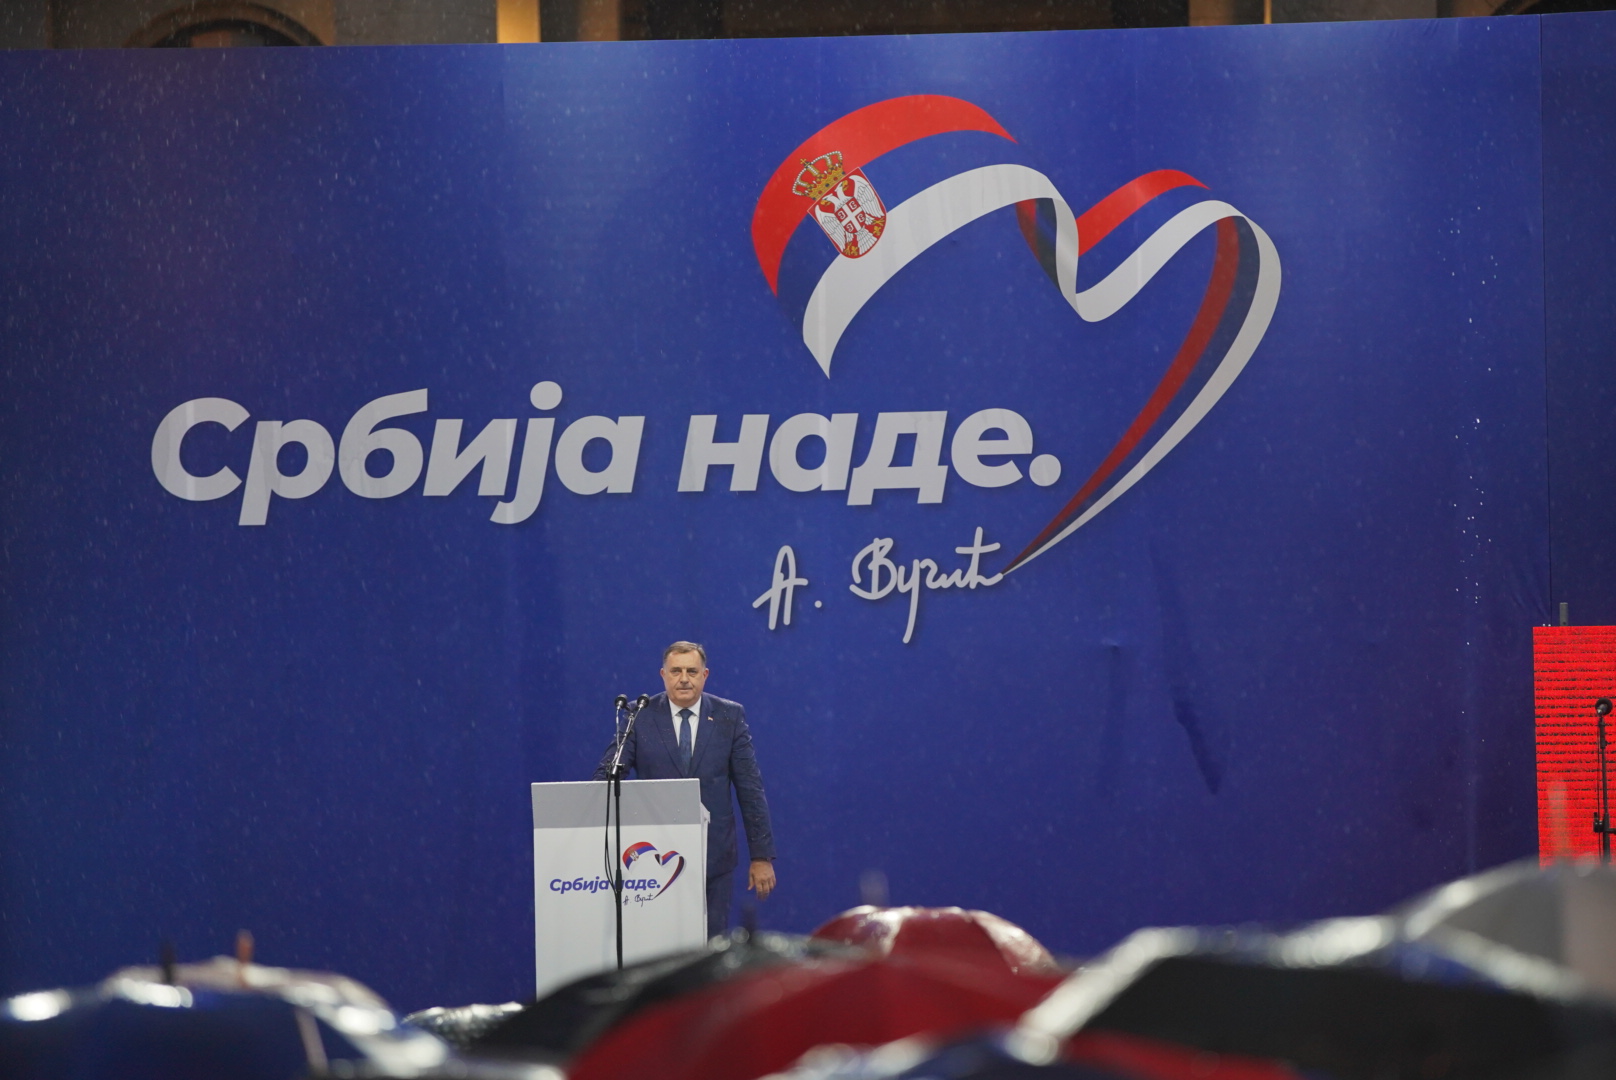 POSTALO VIRALNO Dodik na Vučićevom skupu u Beogradu najavljen kao “Milan” (VIDEO)